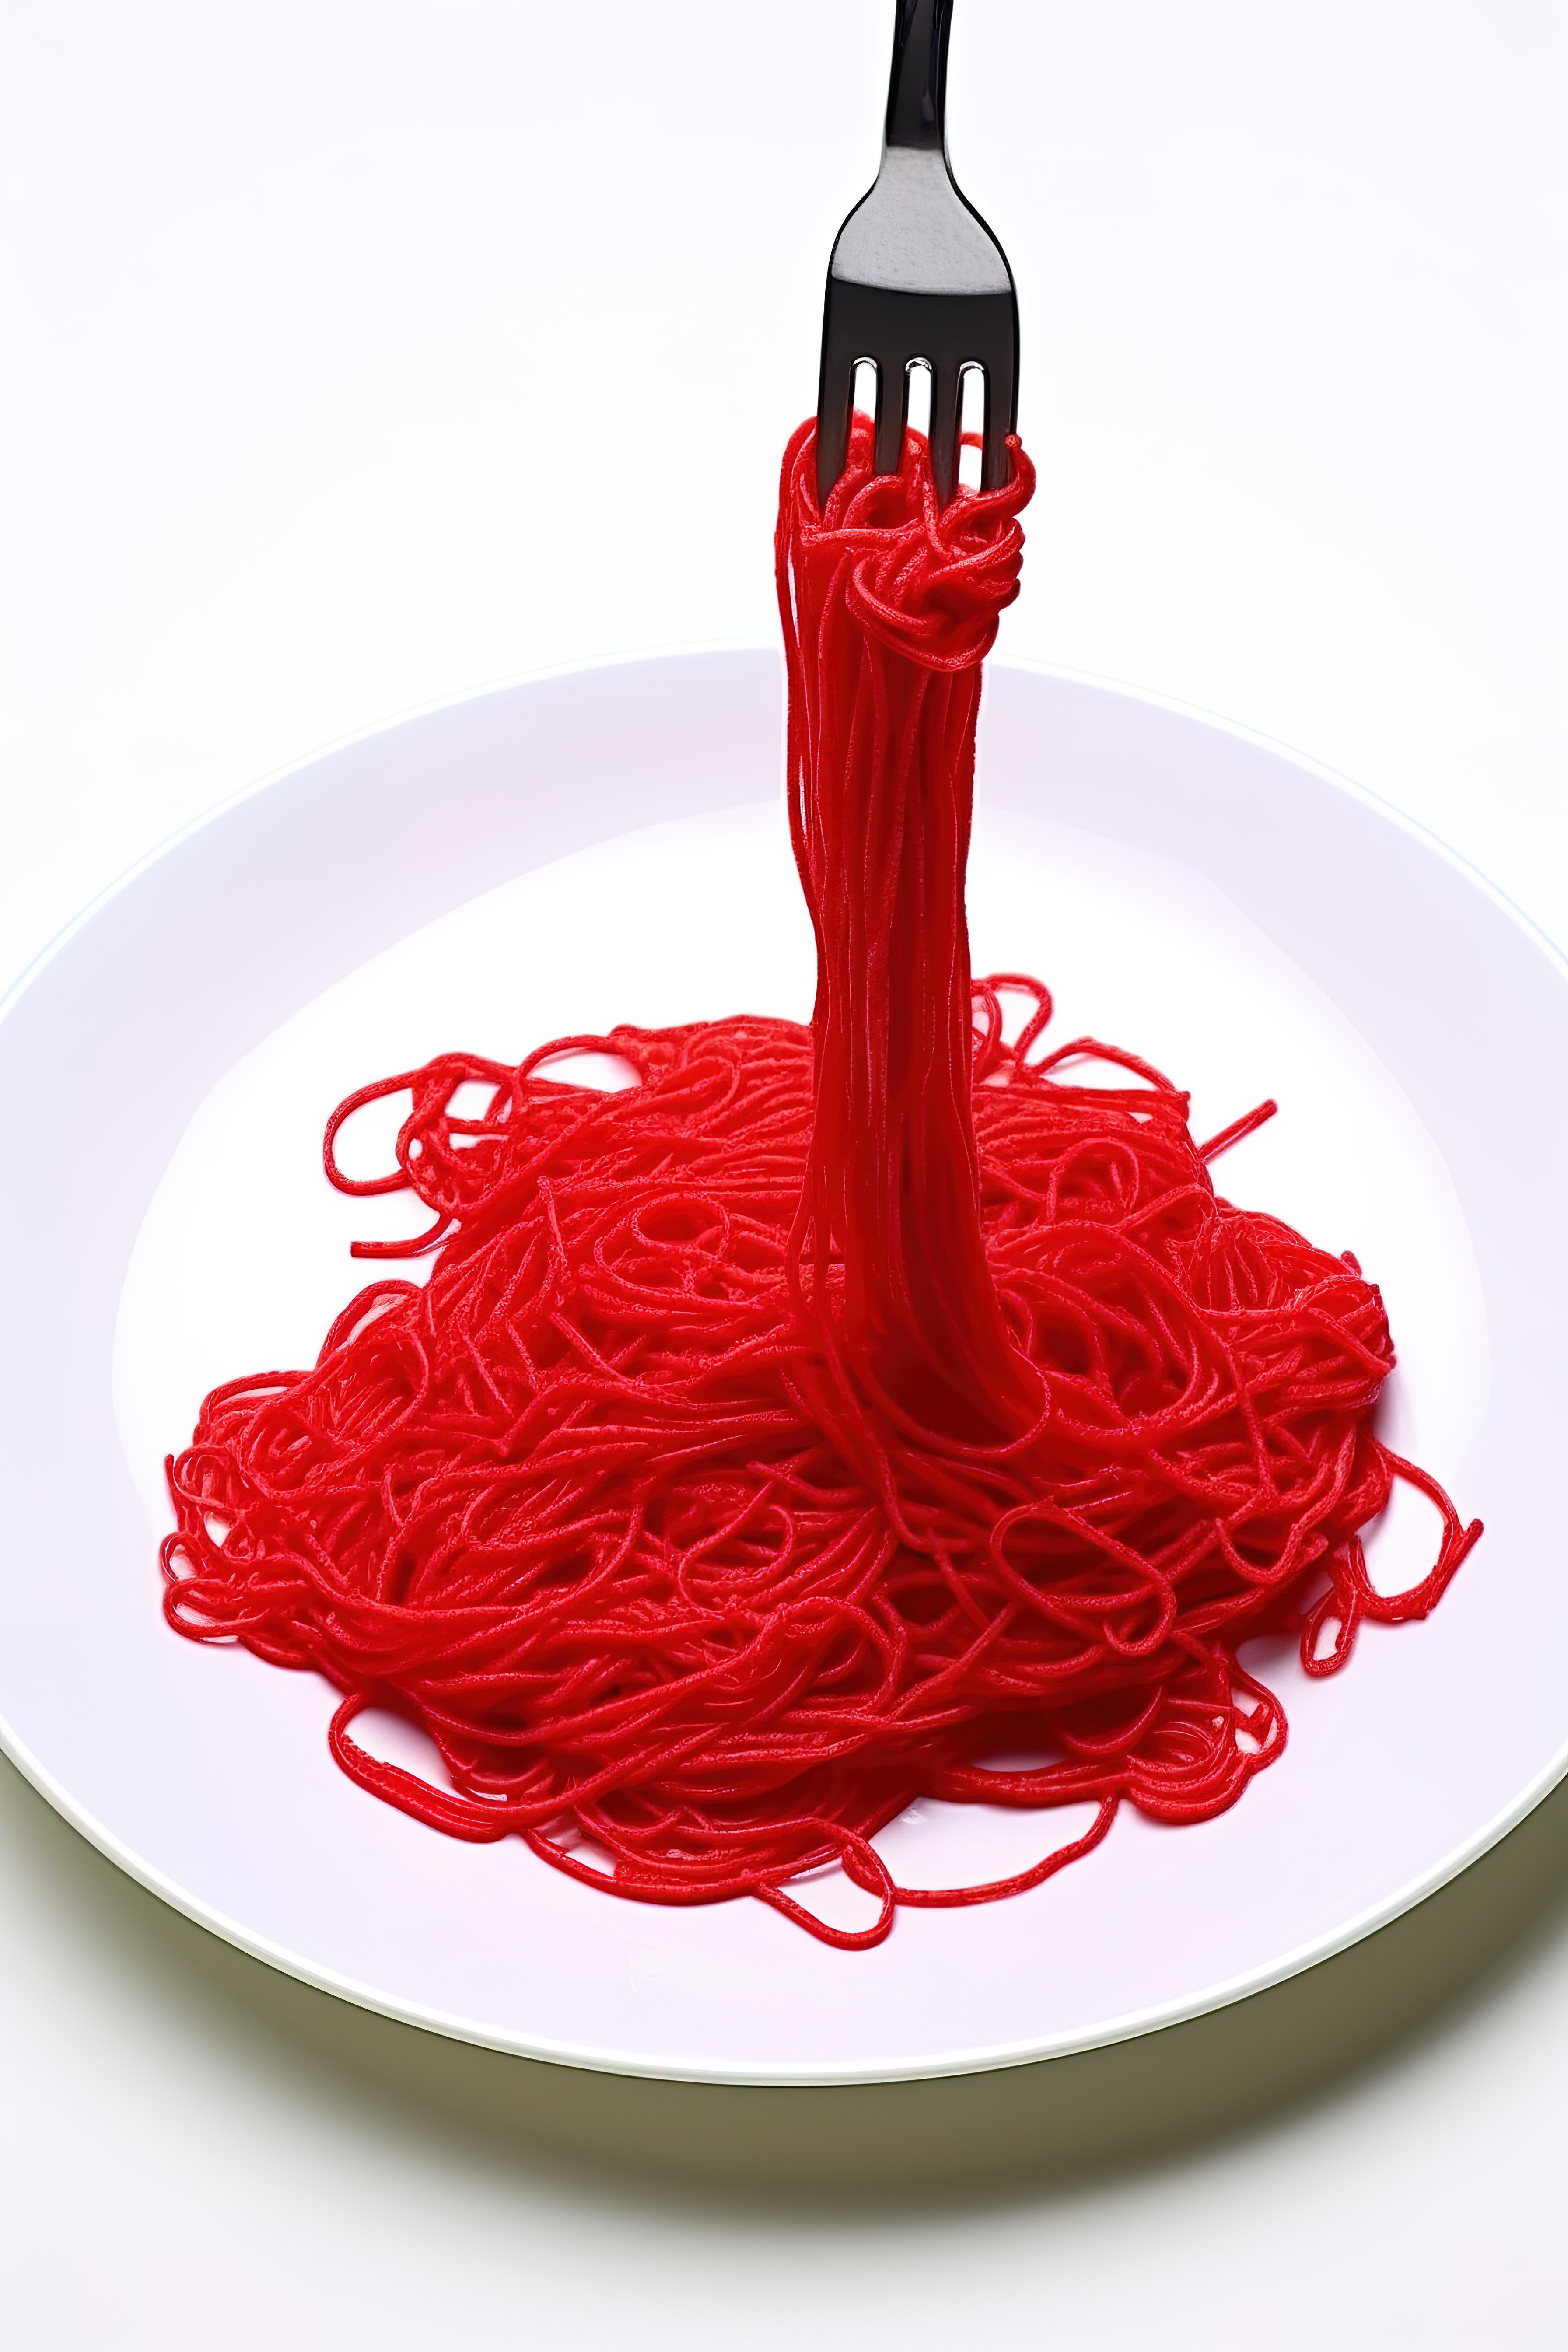 用叉子将红色意大利面条放在盘子上图片